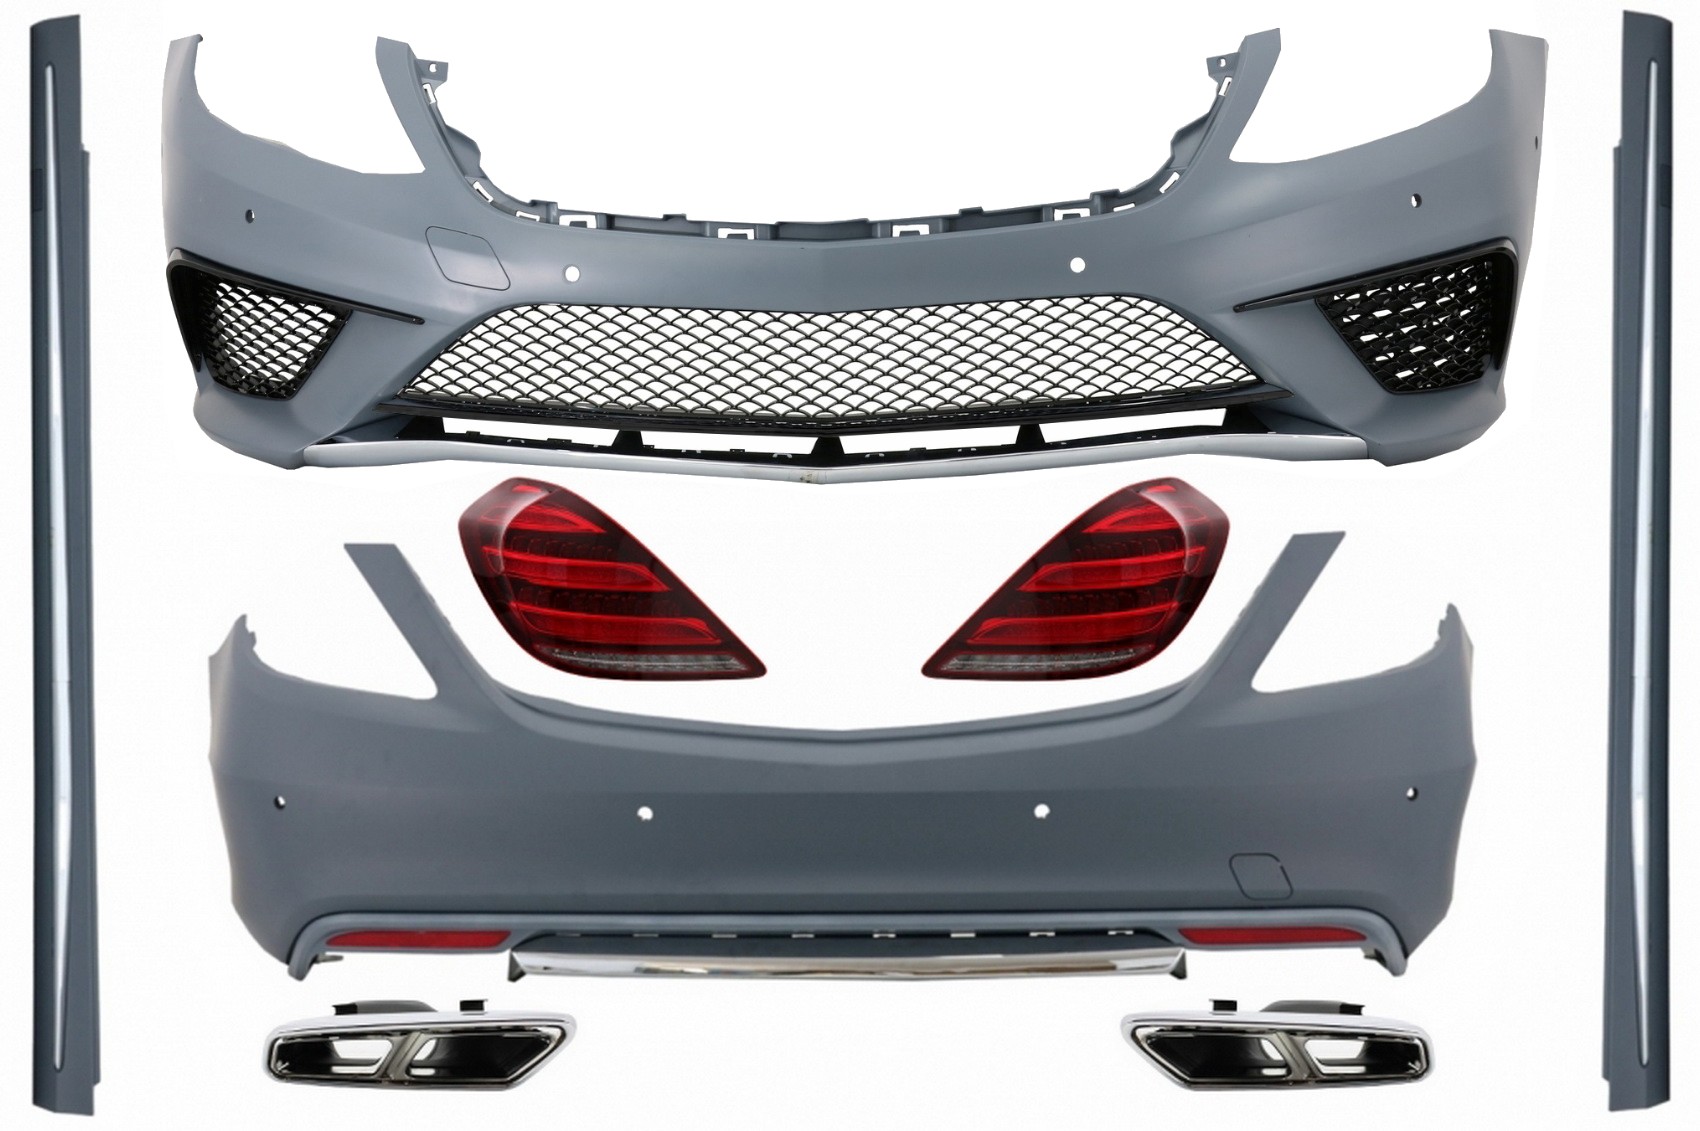 Karosszériakészlet teljes LED-es hátsó lámpákkal és kipufogó-tompítóhegyekkel Króm alkalmas Mercedes S-Class W222 (2013-2017.06.) S63 Designhoz